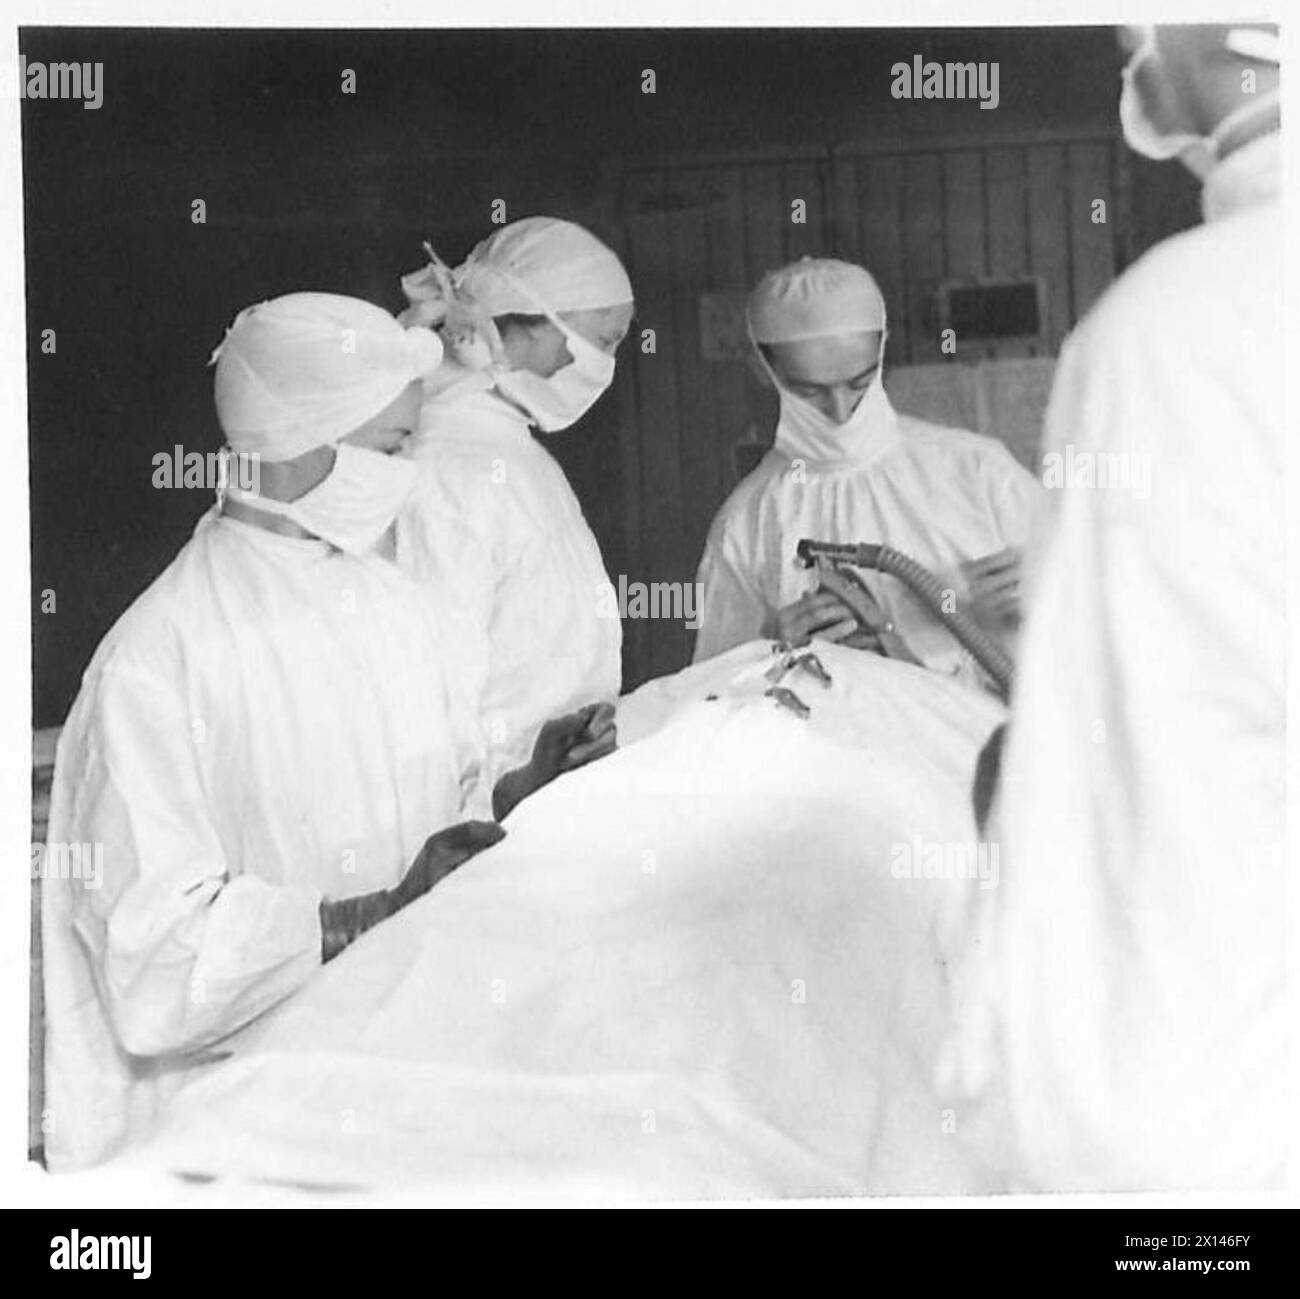 SUORE INFERMIERISTICHE AL LAVORO IN Un OSPEDALE NEL DESERTO - le suore hanno un compito importante nella sala operatoria nell'assistere i chirurghi British Army Foto Stock